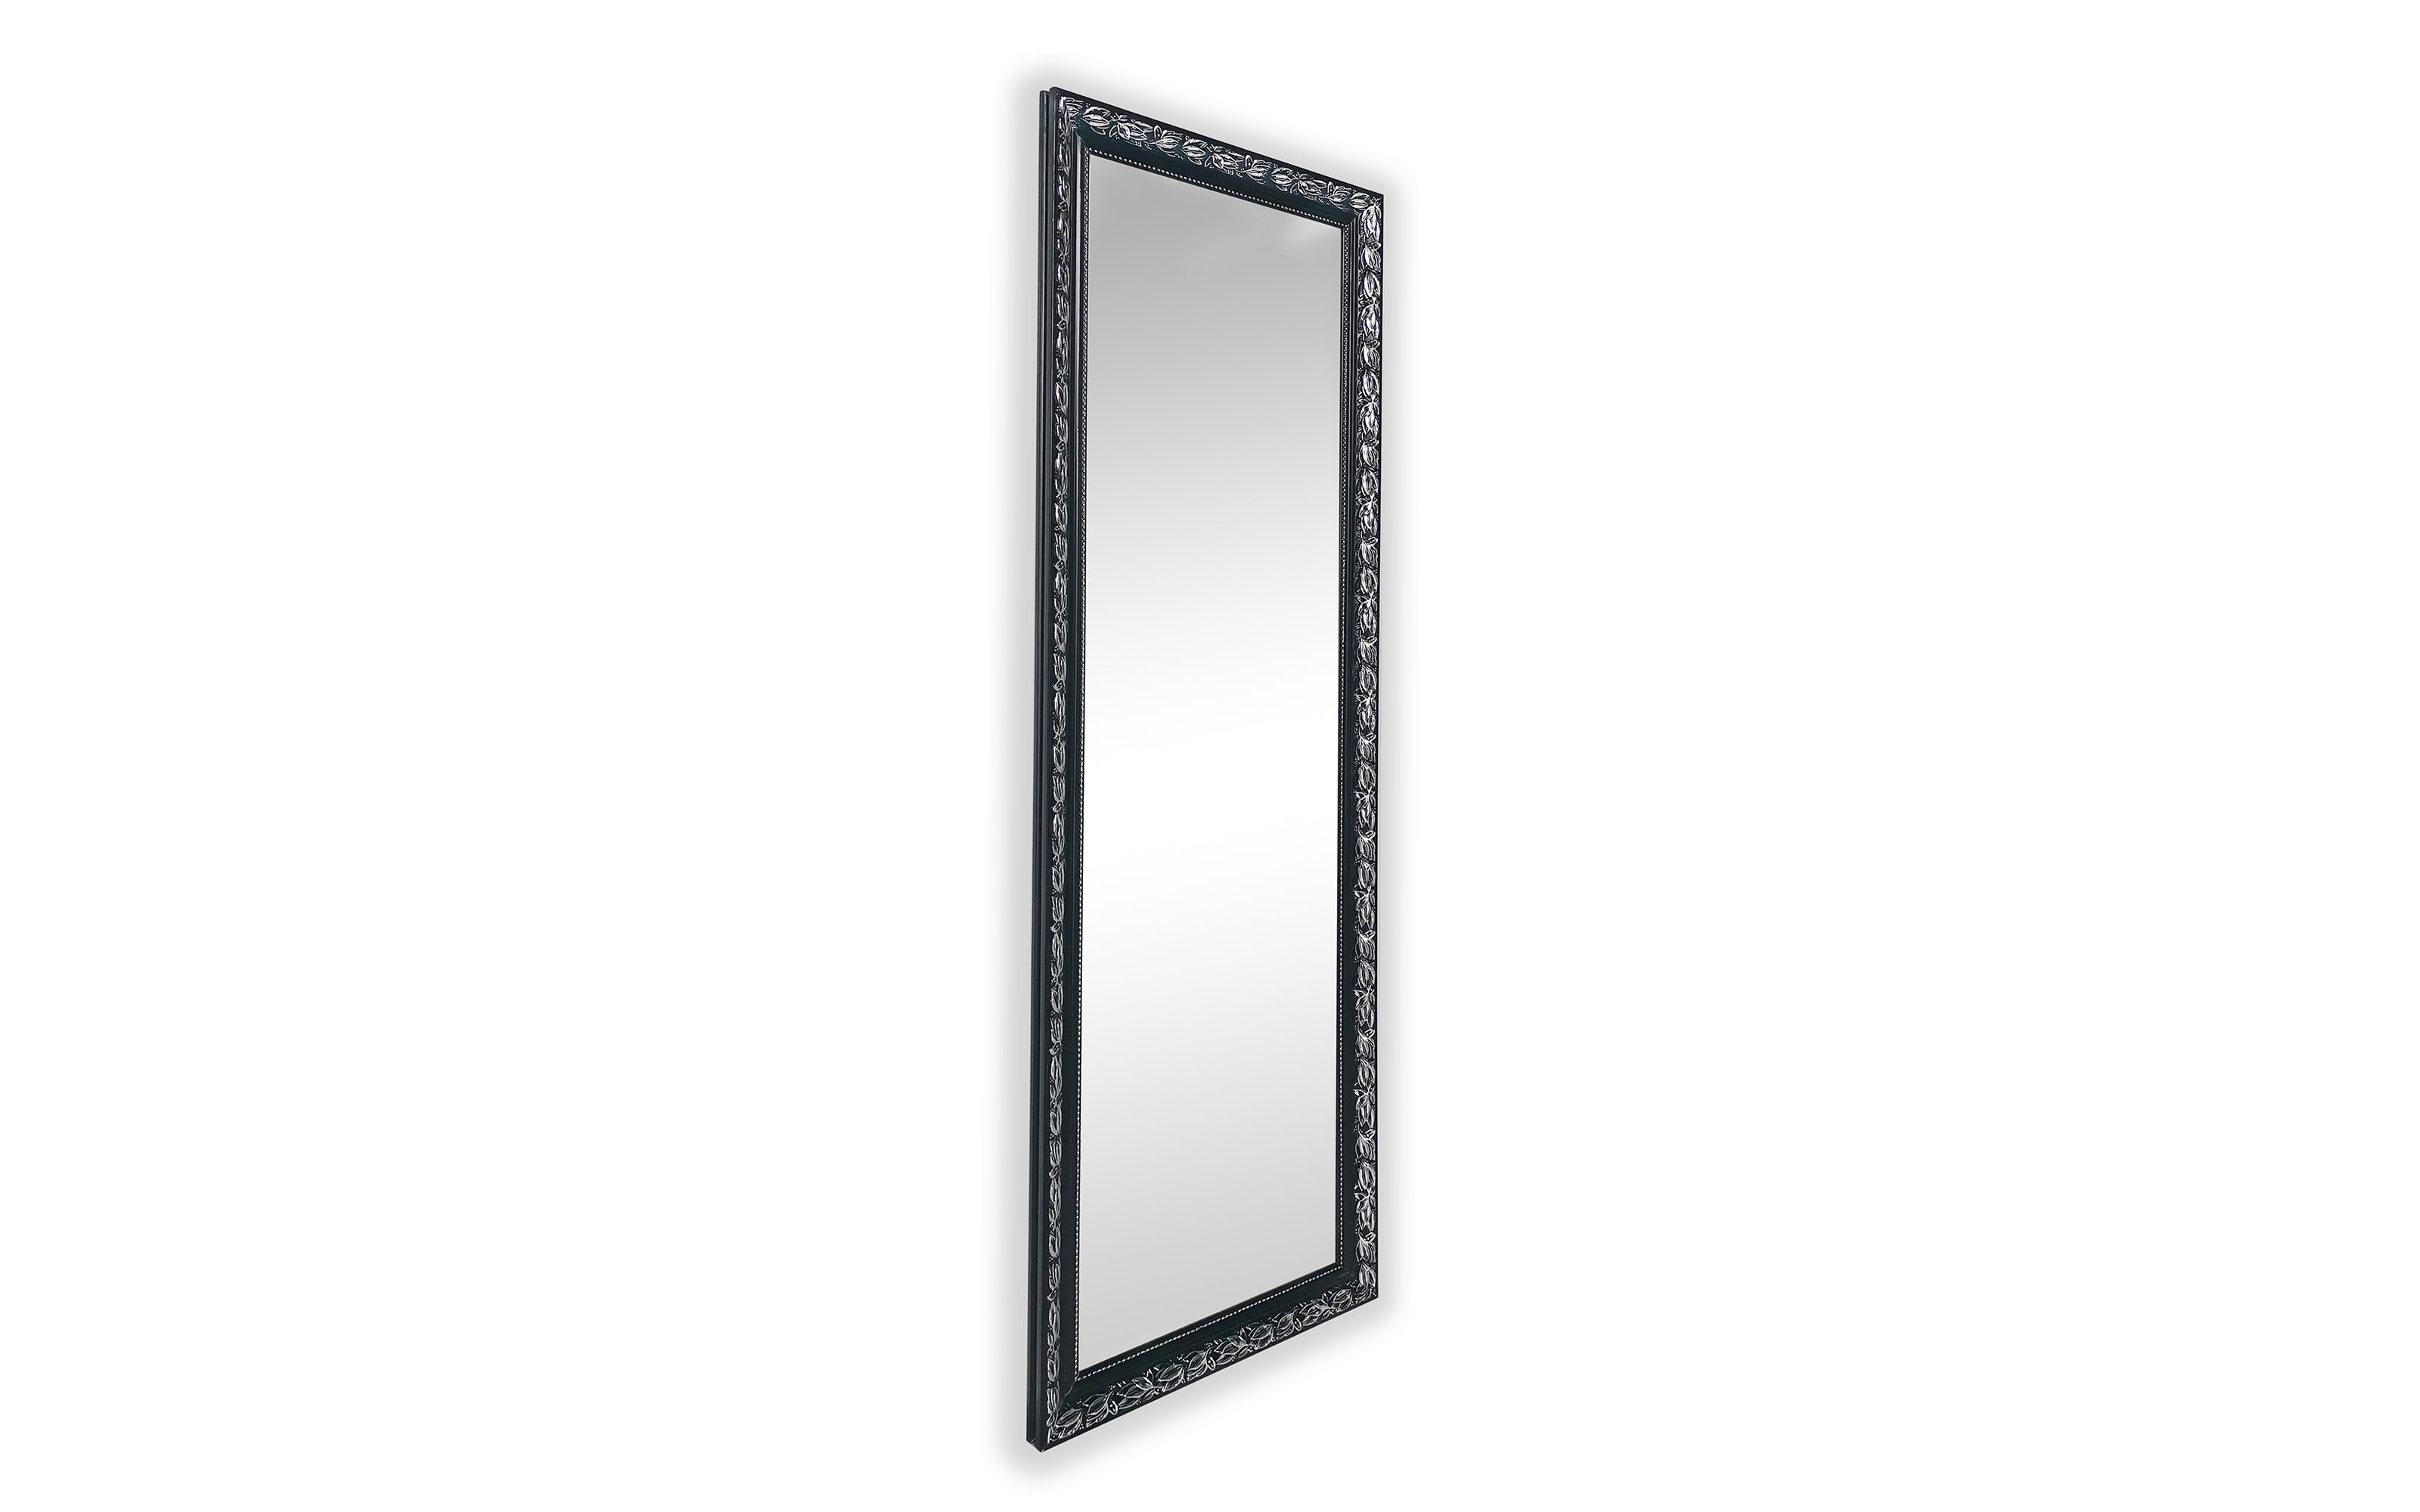 Rahmenspiegel Sonja, schwarz/silberfarbig, 50 x 150 cm